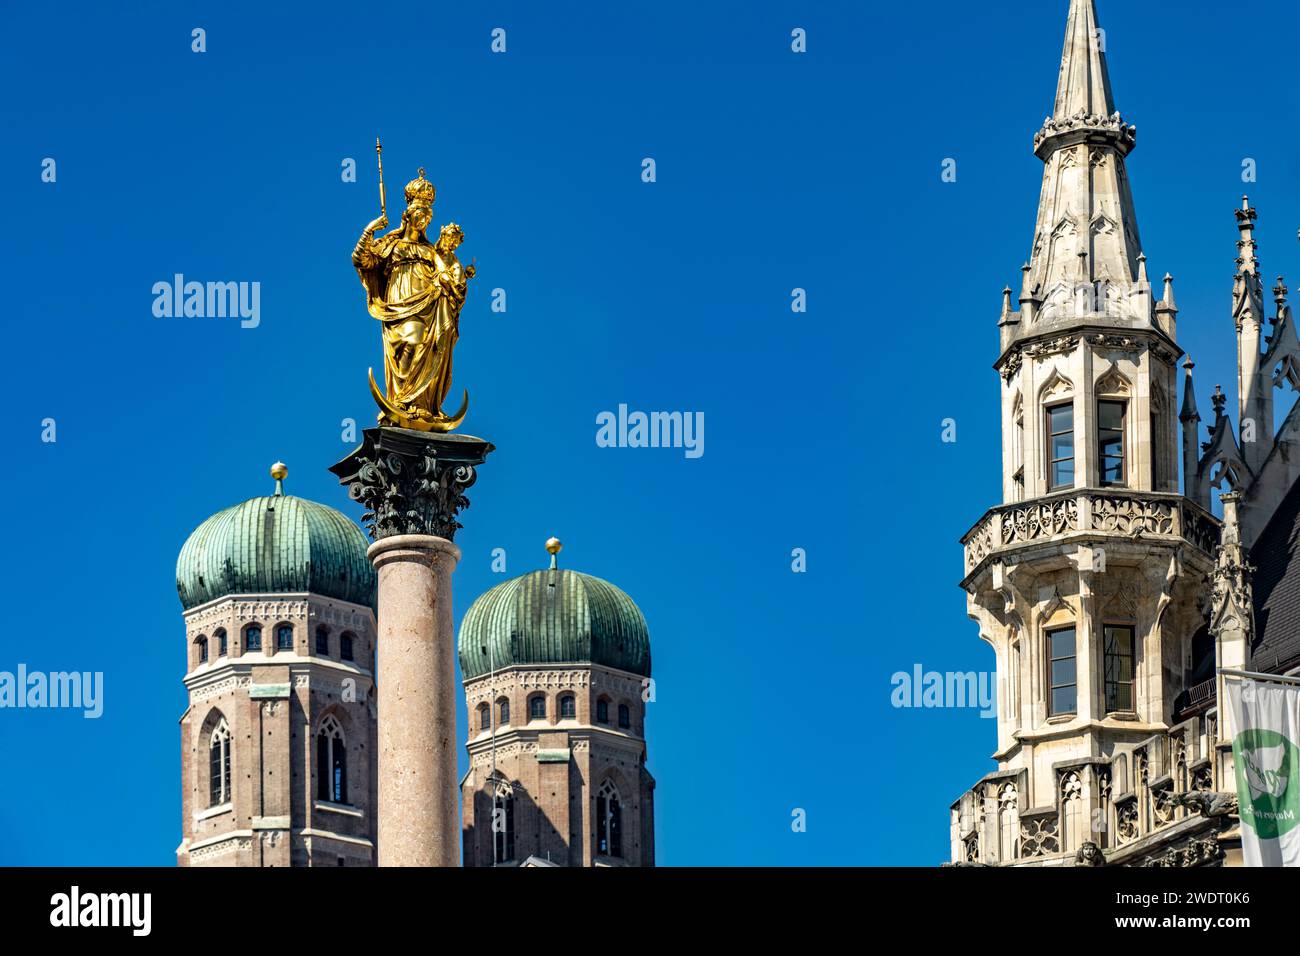 Marienstatue auf der Mariensäule und die Tuerme von Frauenkirche und neuem Rathaus in Muenchen, Bayern, Deutschland  |  Virgin Mary atop the Mariensäu Stock Photo